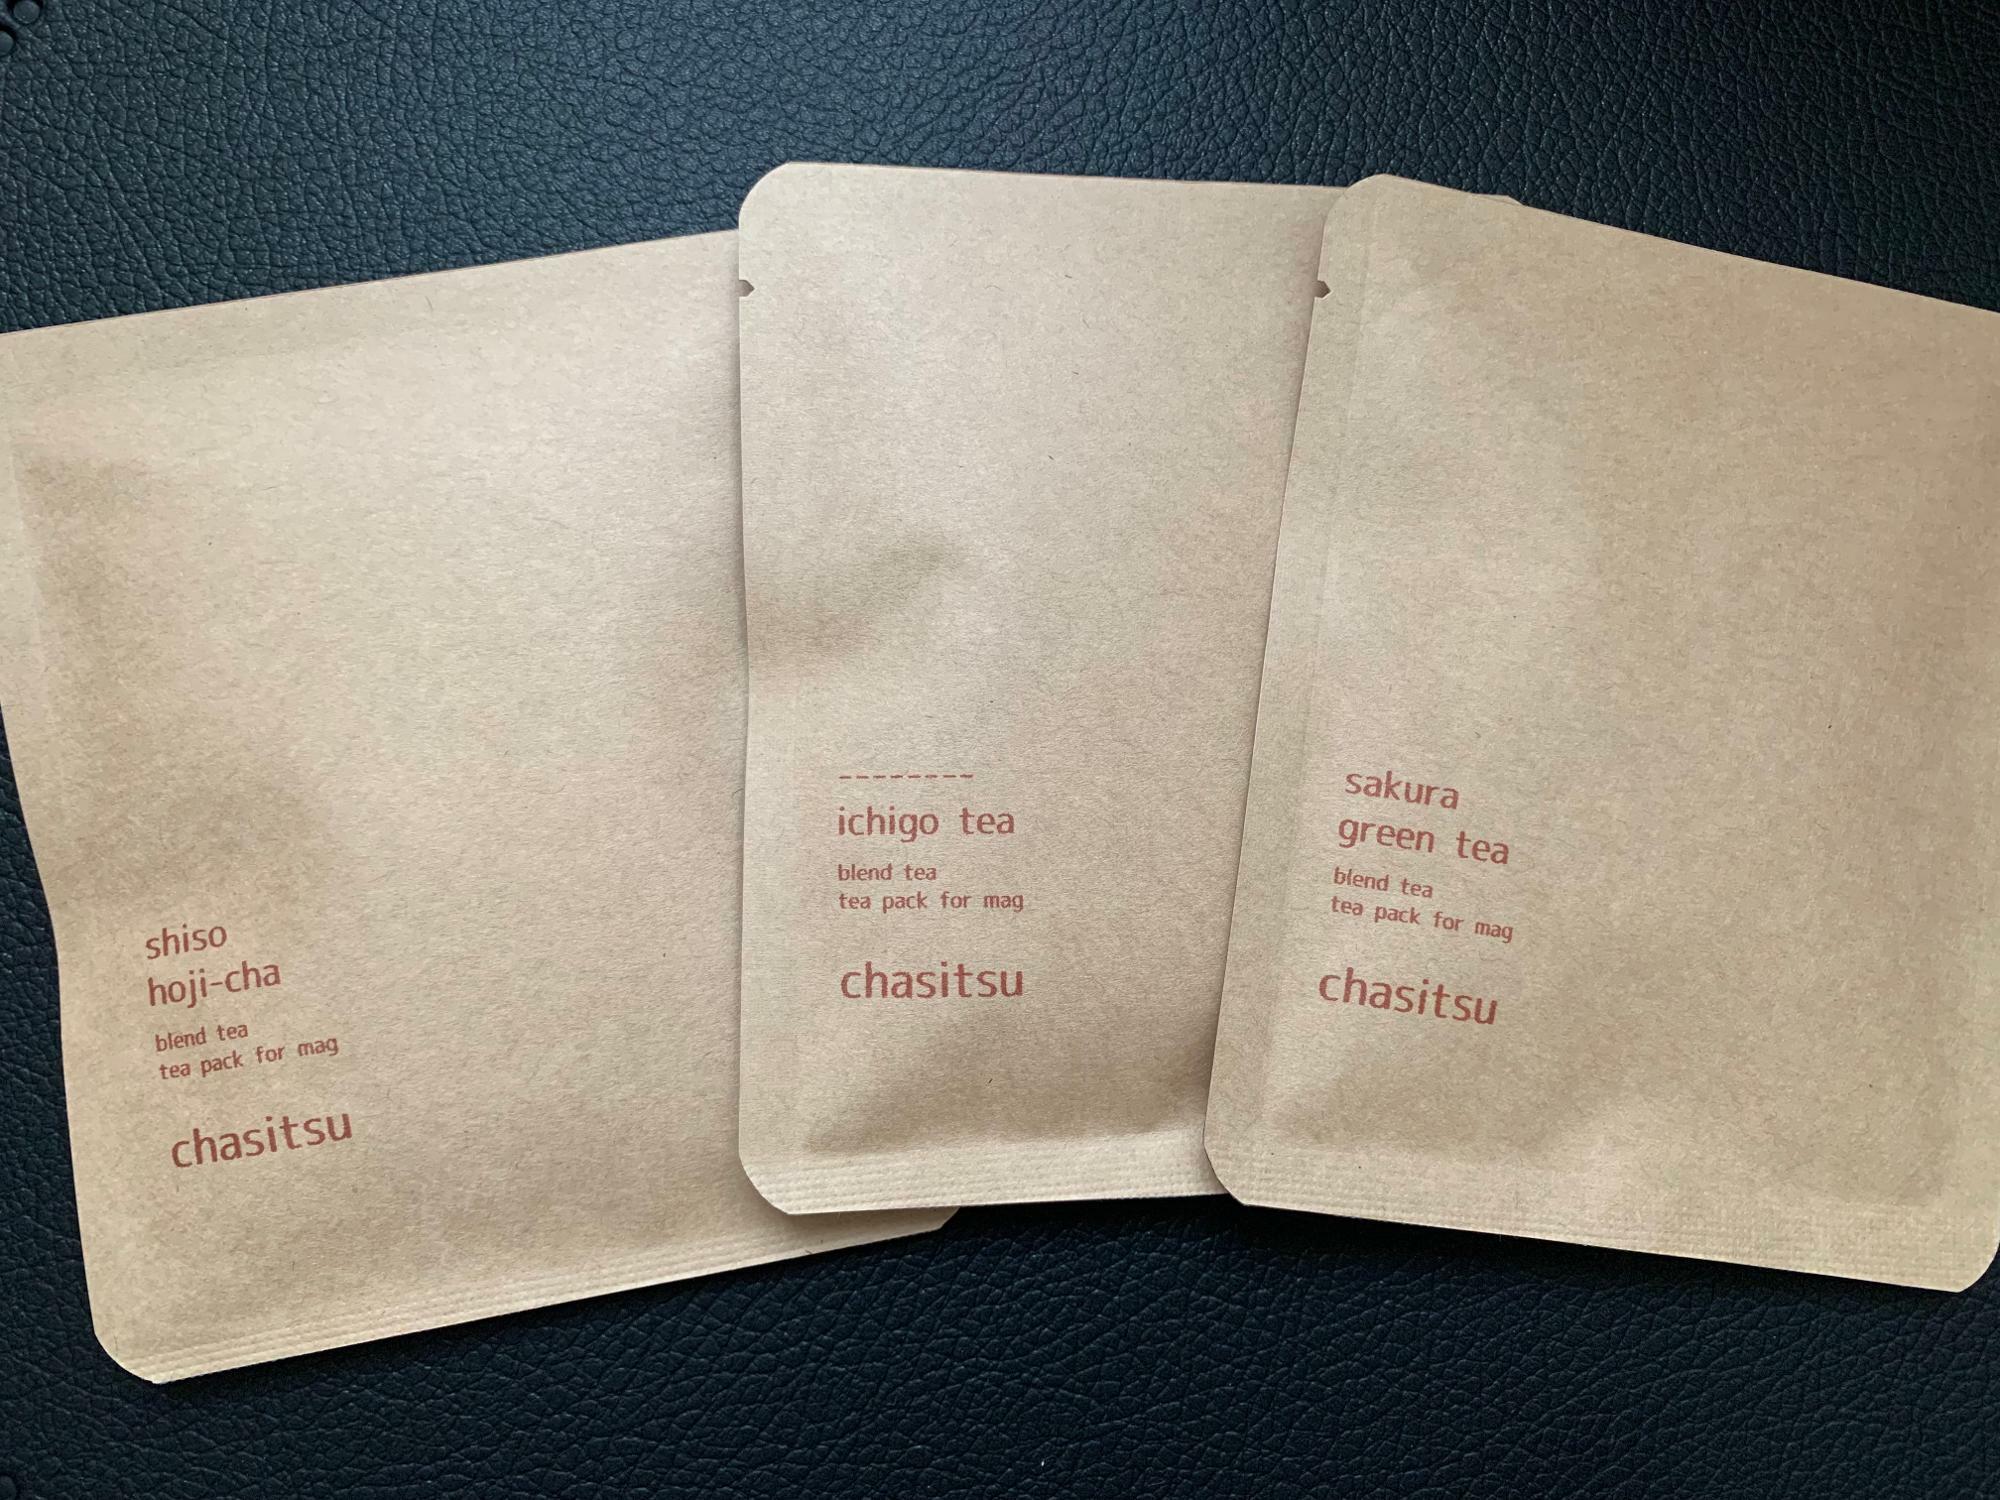 紫蘇ほうじ茶、苺紅茶、さくら緑茶。各2P入り3袋で540円（税込）